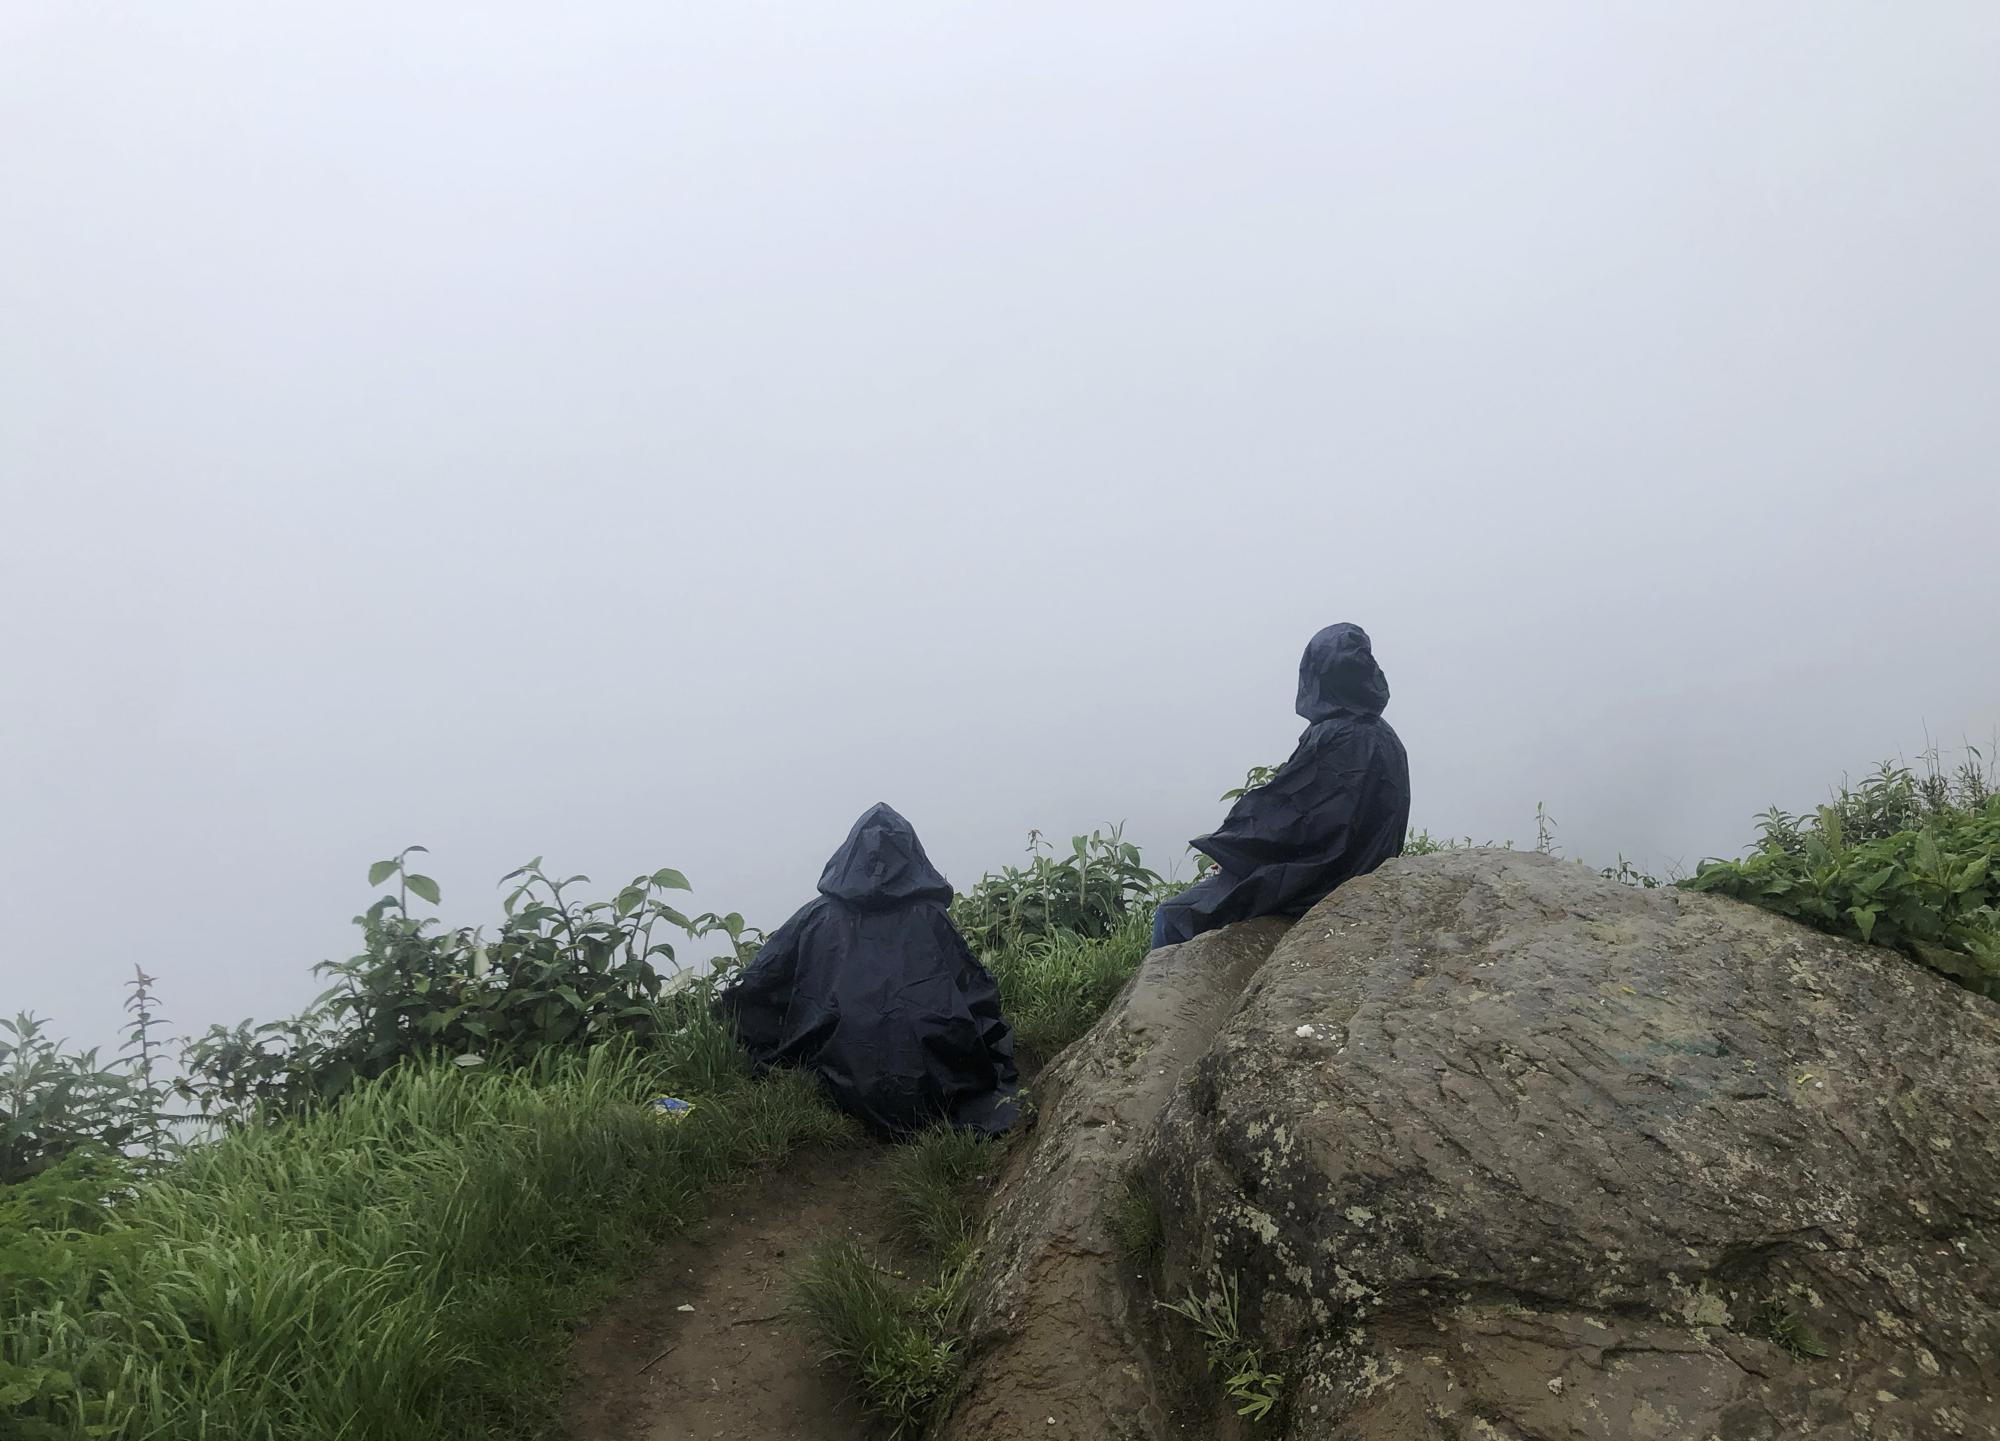 Una madre y su hija miran hacia las nubes en la cumbre cerca del valle de Dzukou, a lo largo de la frontera estatal de Nagaland-Manipur, India, en esta foto de iPhone del lunes 13 de junio de 2022.  "Fue un momento tranquilo al final de una subida lluviosa y resbaladiza. Ambos estaban paralizados, absortos en la soledad de las nubes. Sabía que en un momento se les unirían más personas, así que rápidamente levanté mi teléfono y tomé este marco", escribió Arthur.  (Foto AP/Yirmiyan Arthur)